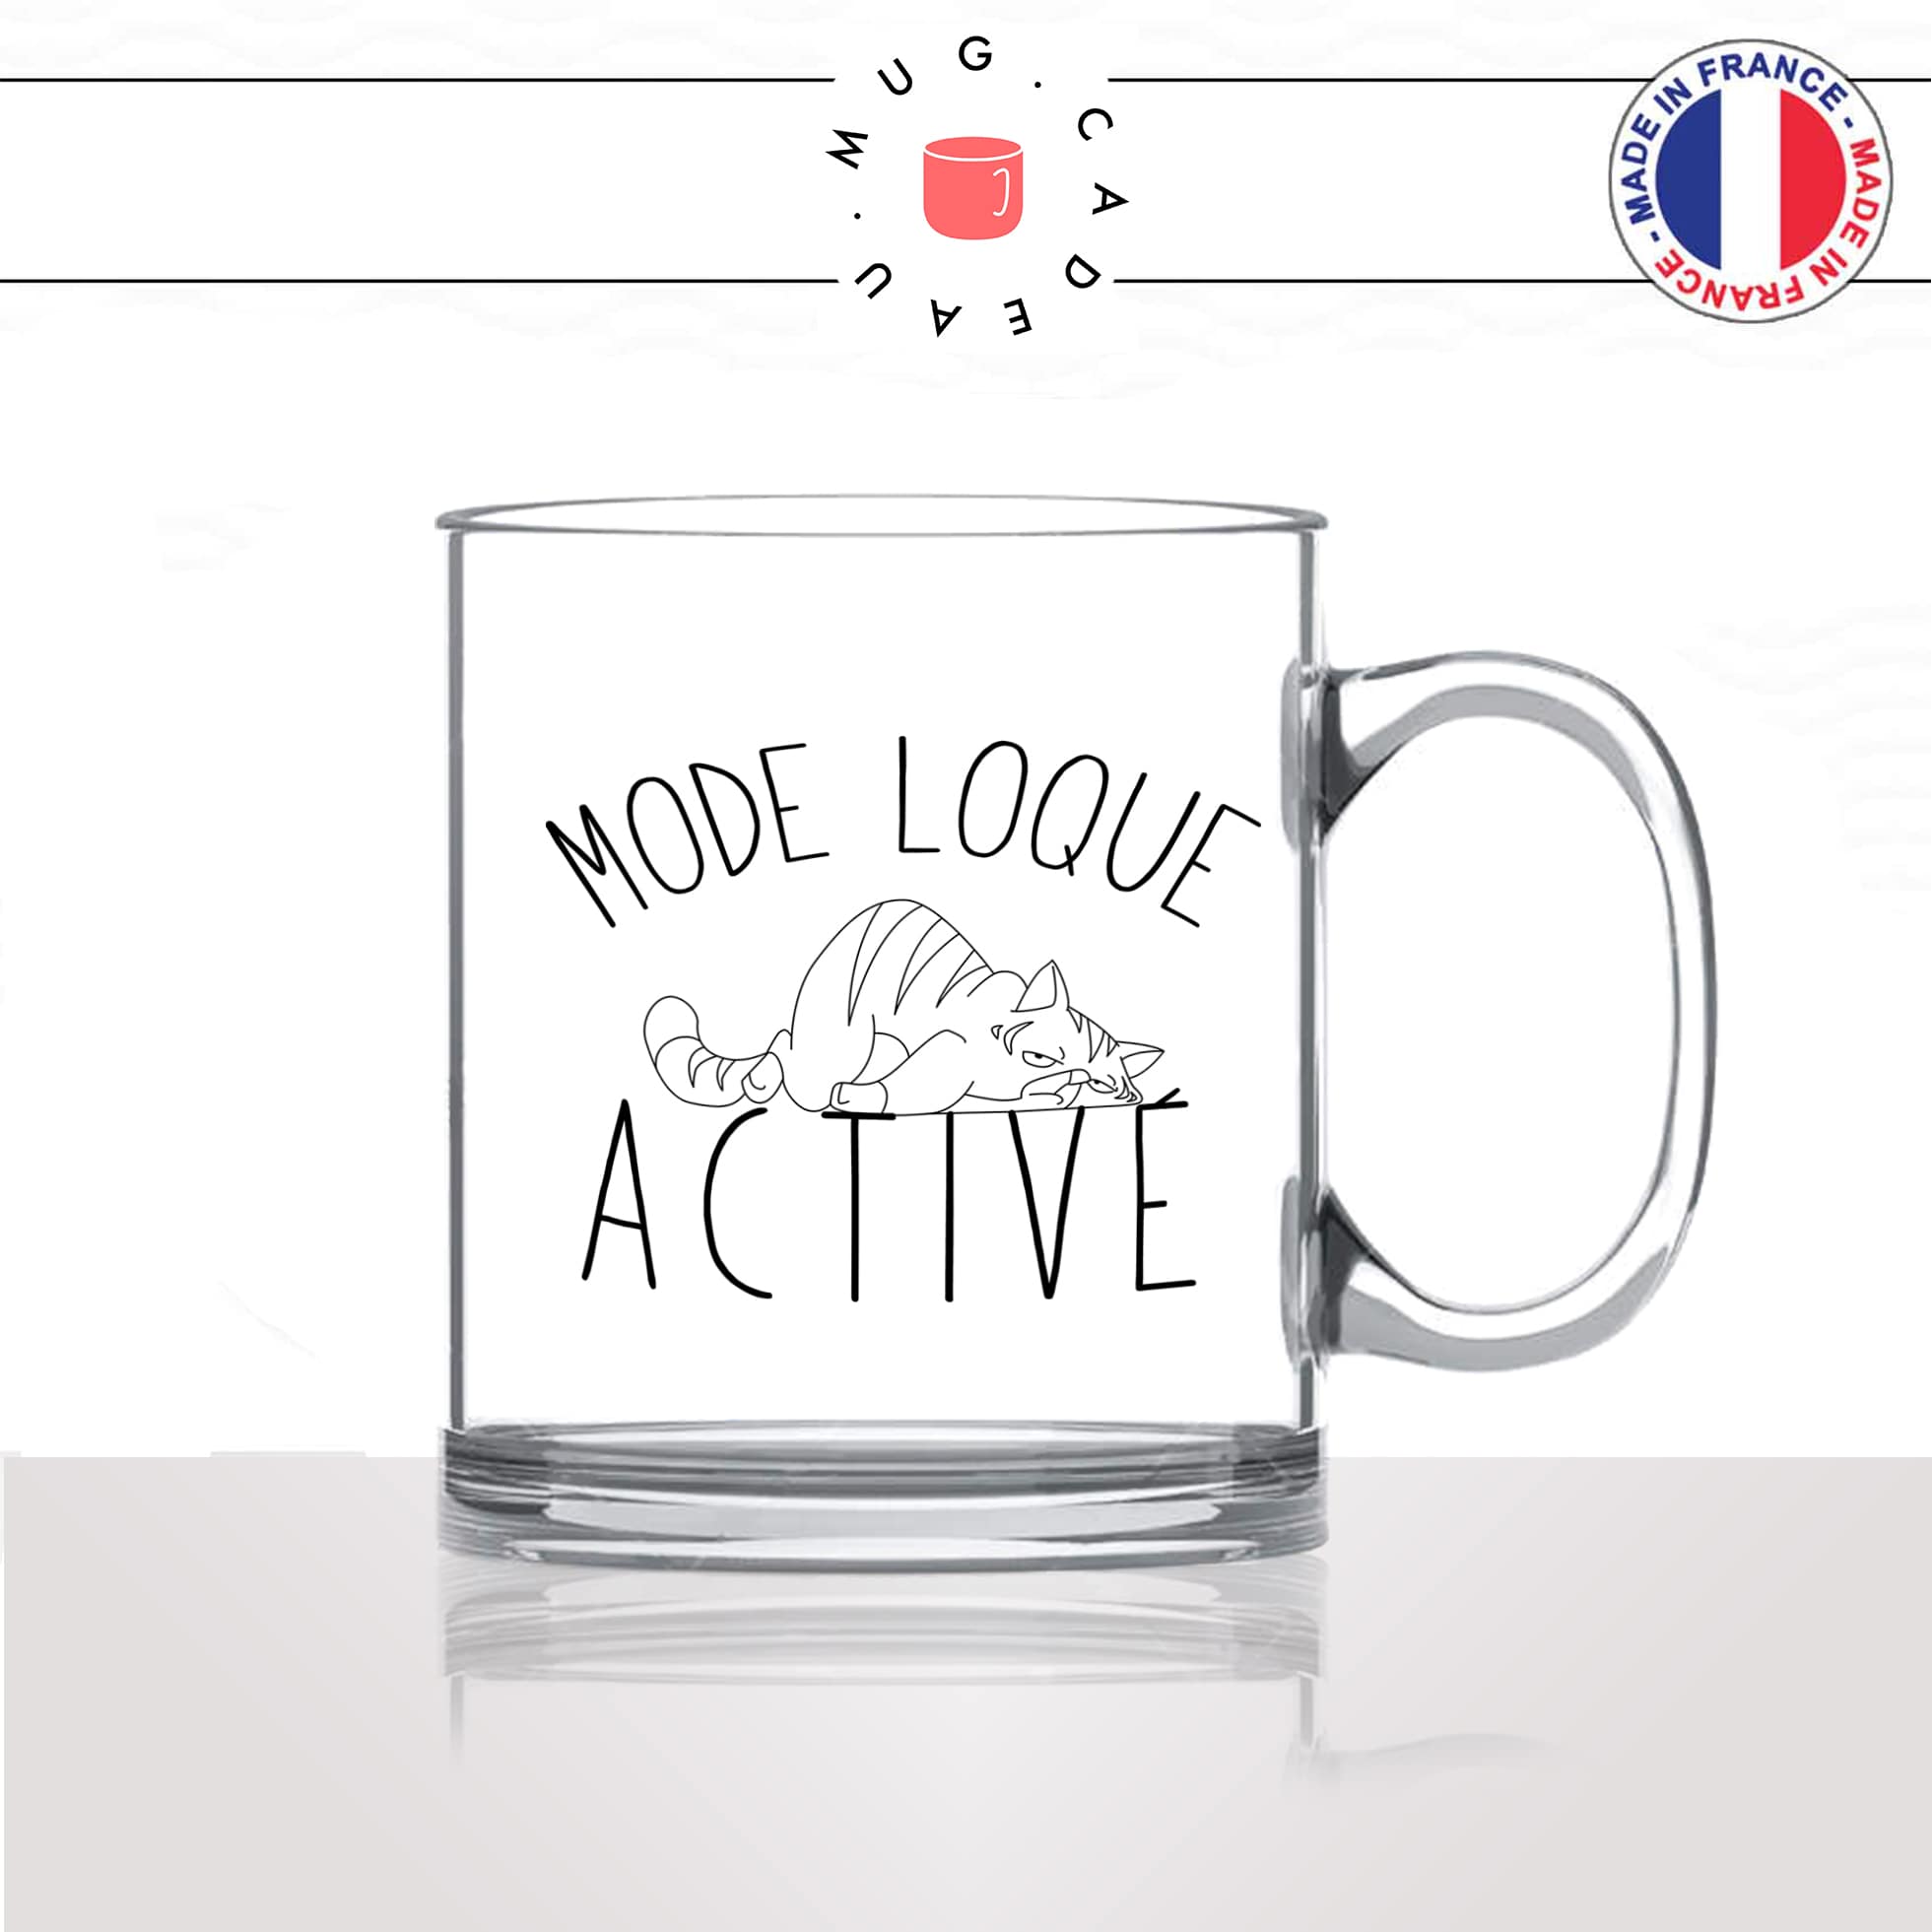 mug-tasse-en-verre-transparent-mode-loque-activé-flemme-WE-humour-chat-mignon-animal-chaton-noir-fun-café-thé-idée-cadeau-original-personnalisé2-min